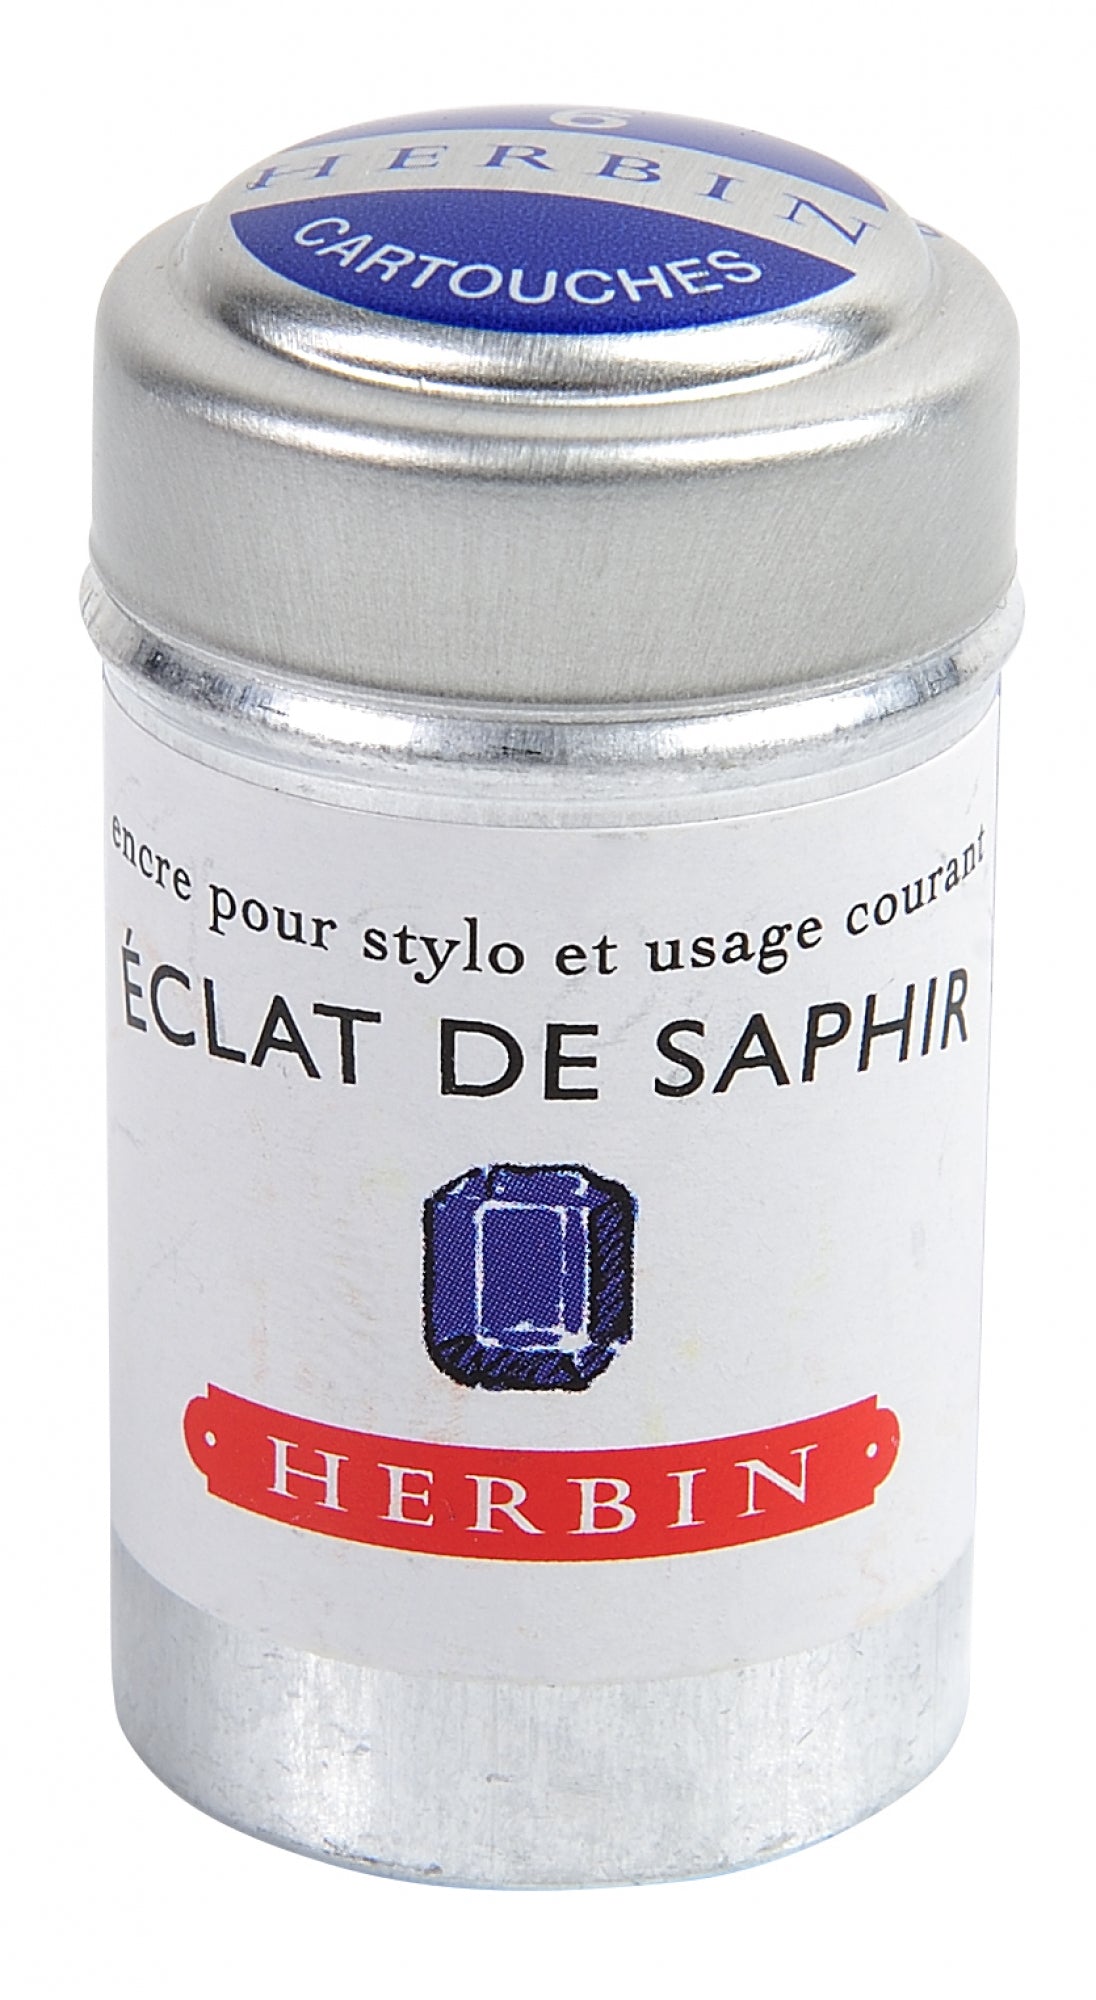 J Herbin Eclat de Saphir